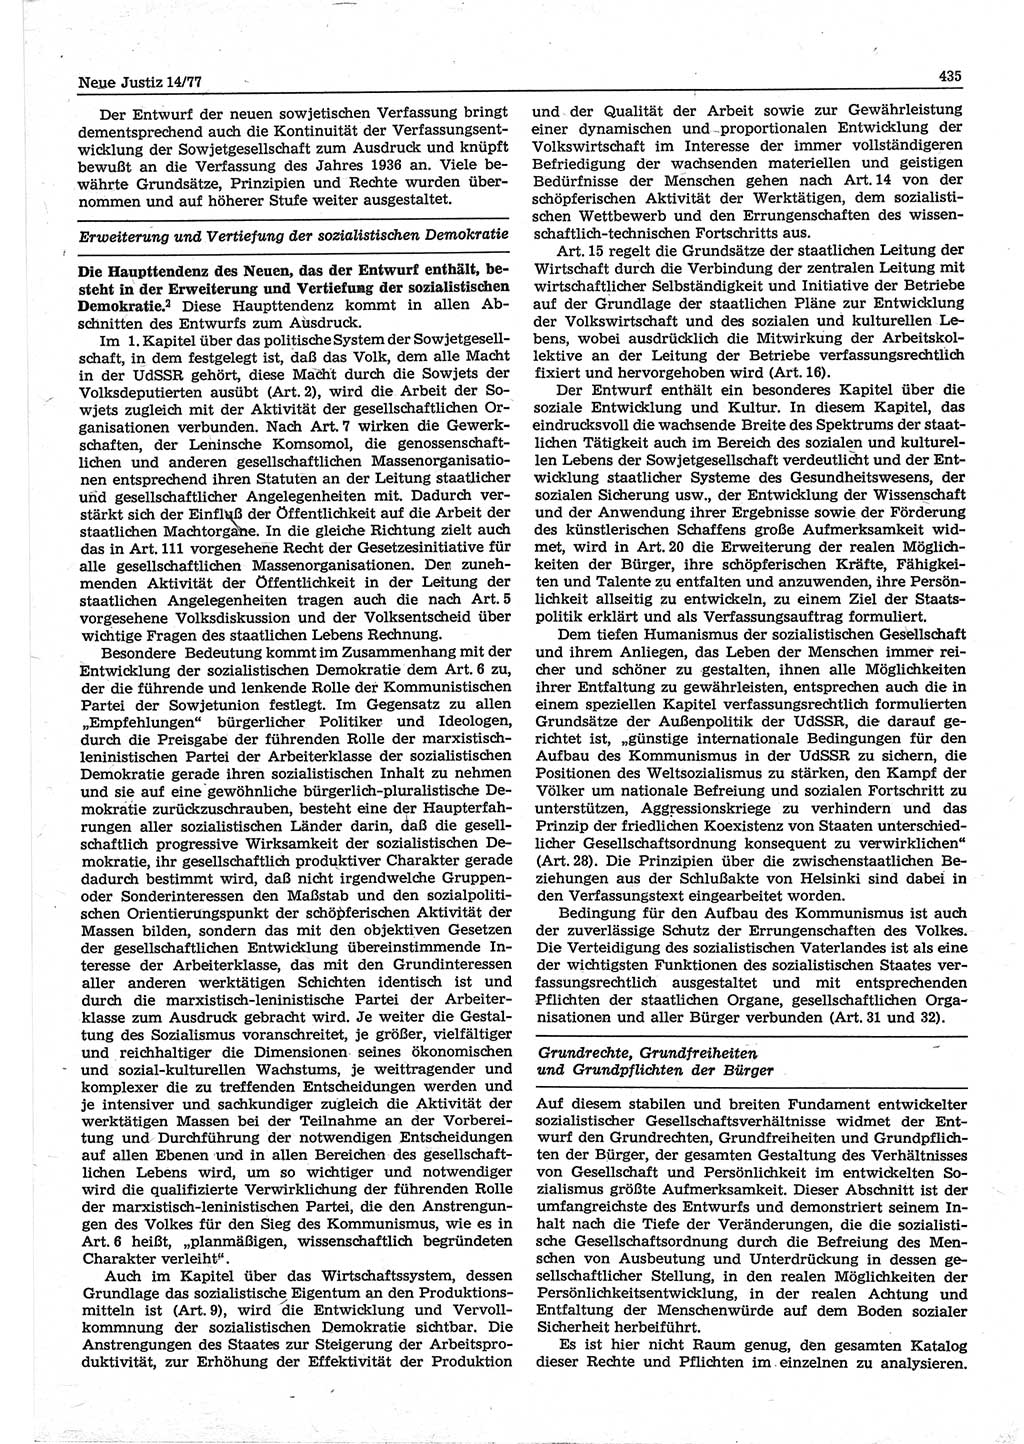 Neue Justiz (NJ), Zeitschrift für Recht und Rechtswissenschaft-Zeitschrift, sozialistisches Recht und Gesetzlichkeit, 31. Jahrgang 1977, Seite 435 (NJ DDR 1977, S. 435)